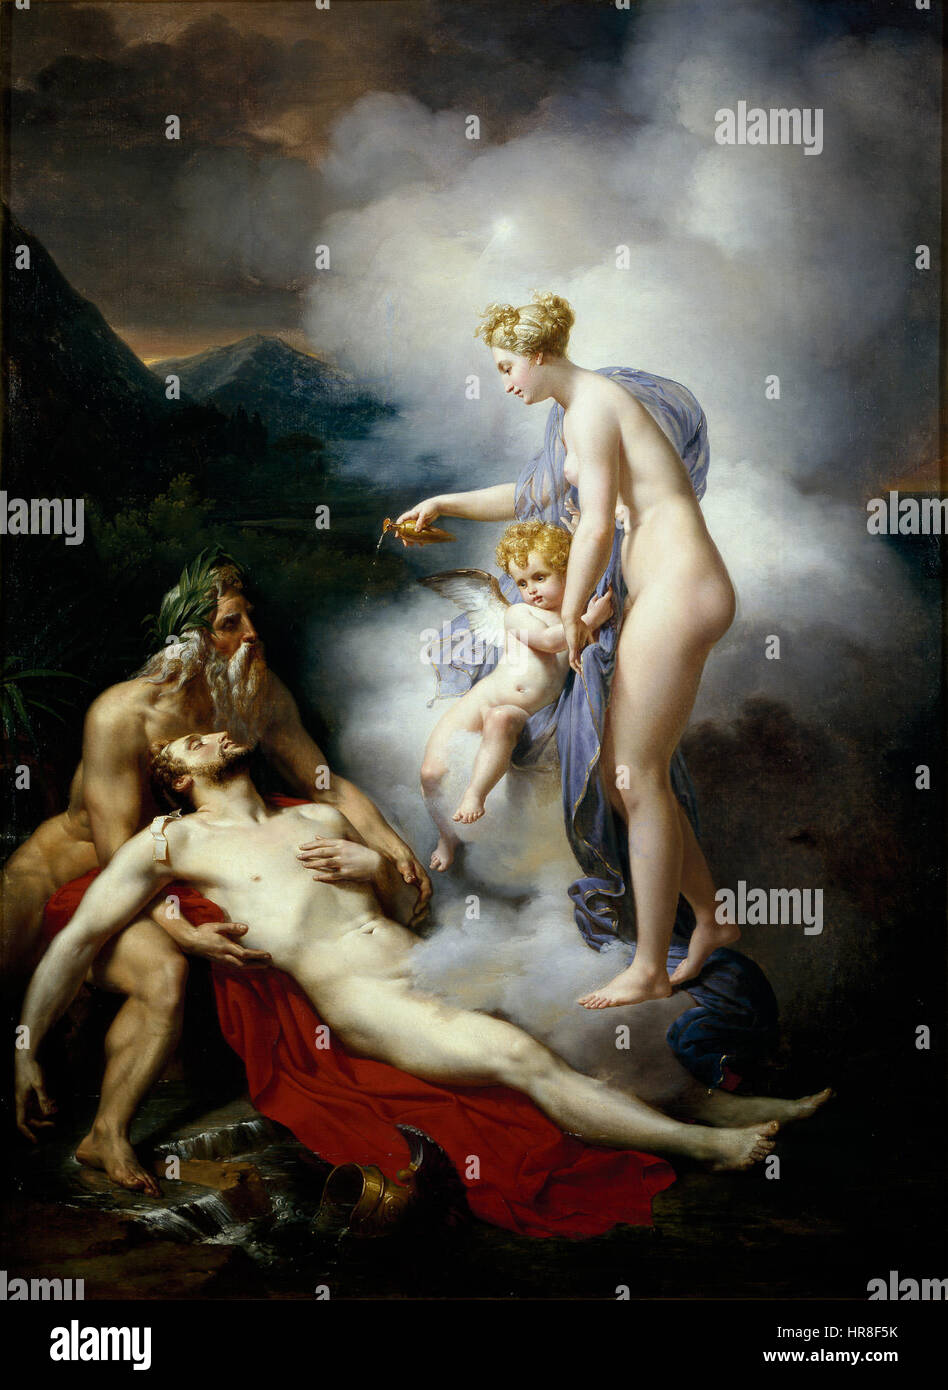 Venus curando a Eneas (Blondel) Stock Photo